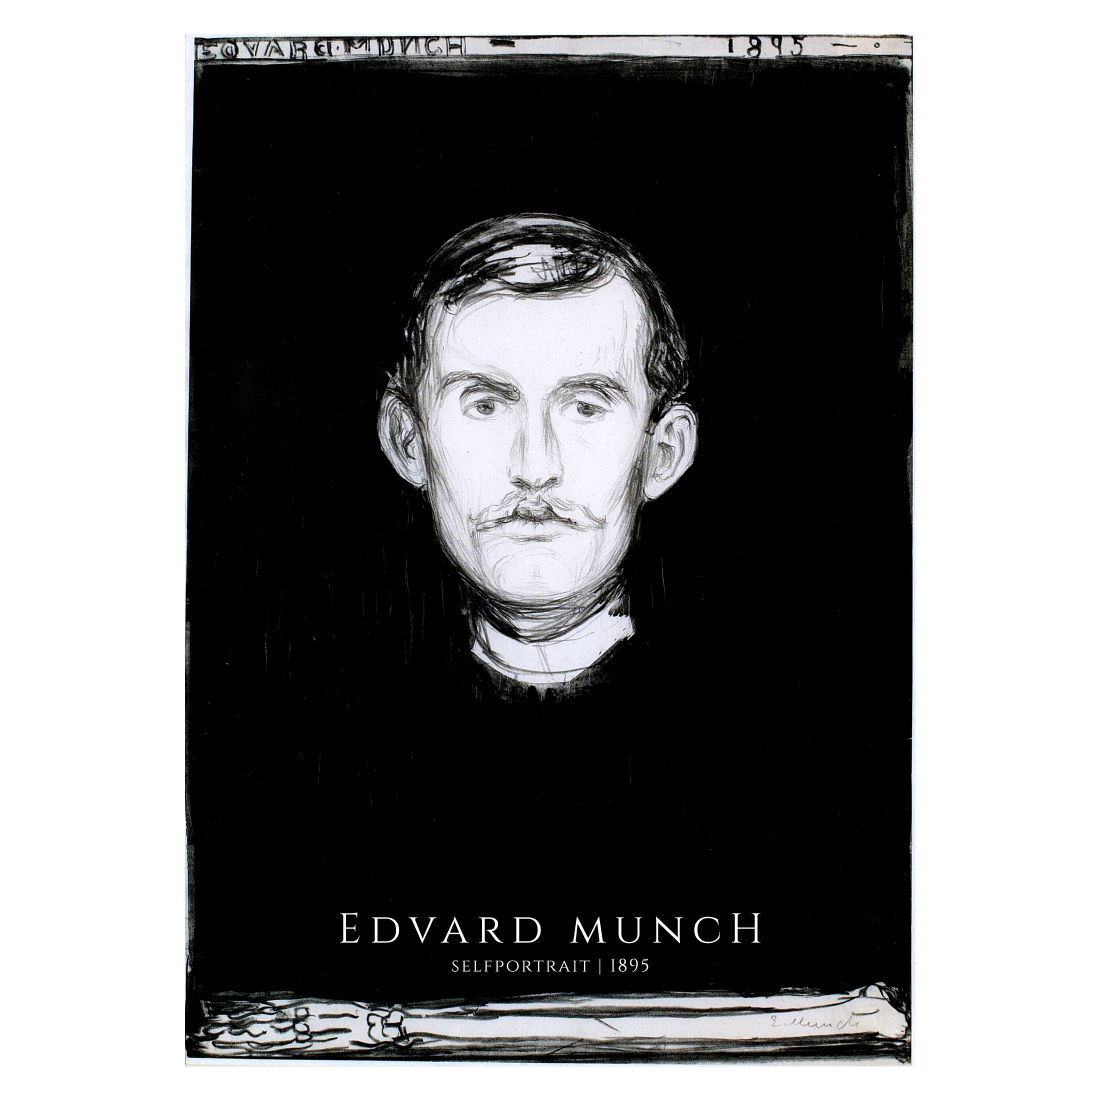 Kunstplakat med selvportræt af Edvard Munch